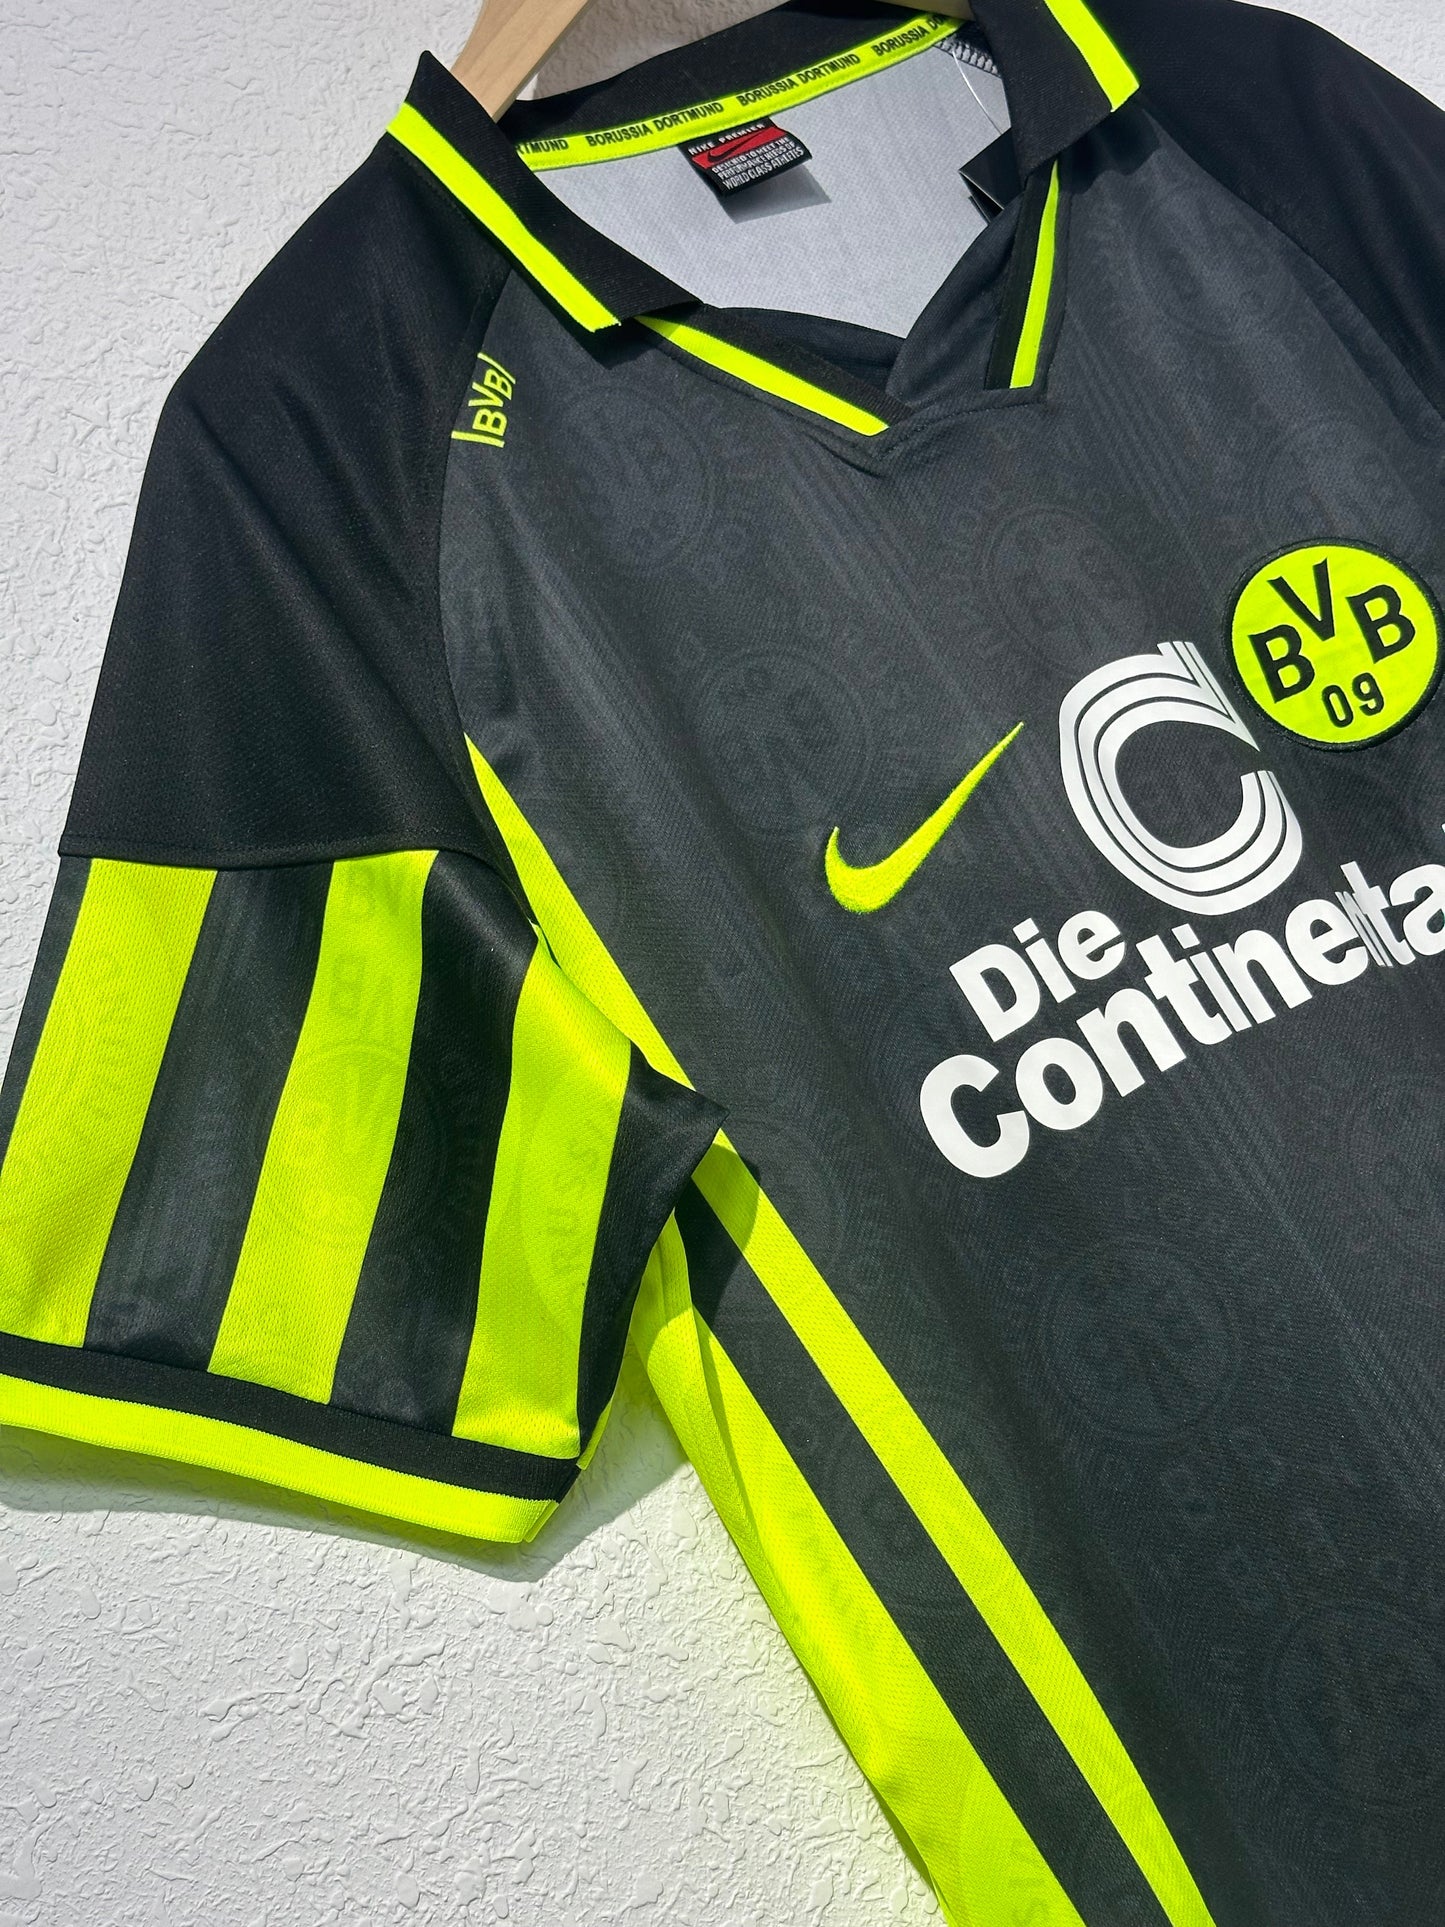 Retro: 1996-97 Dortmund